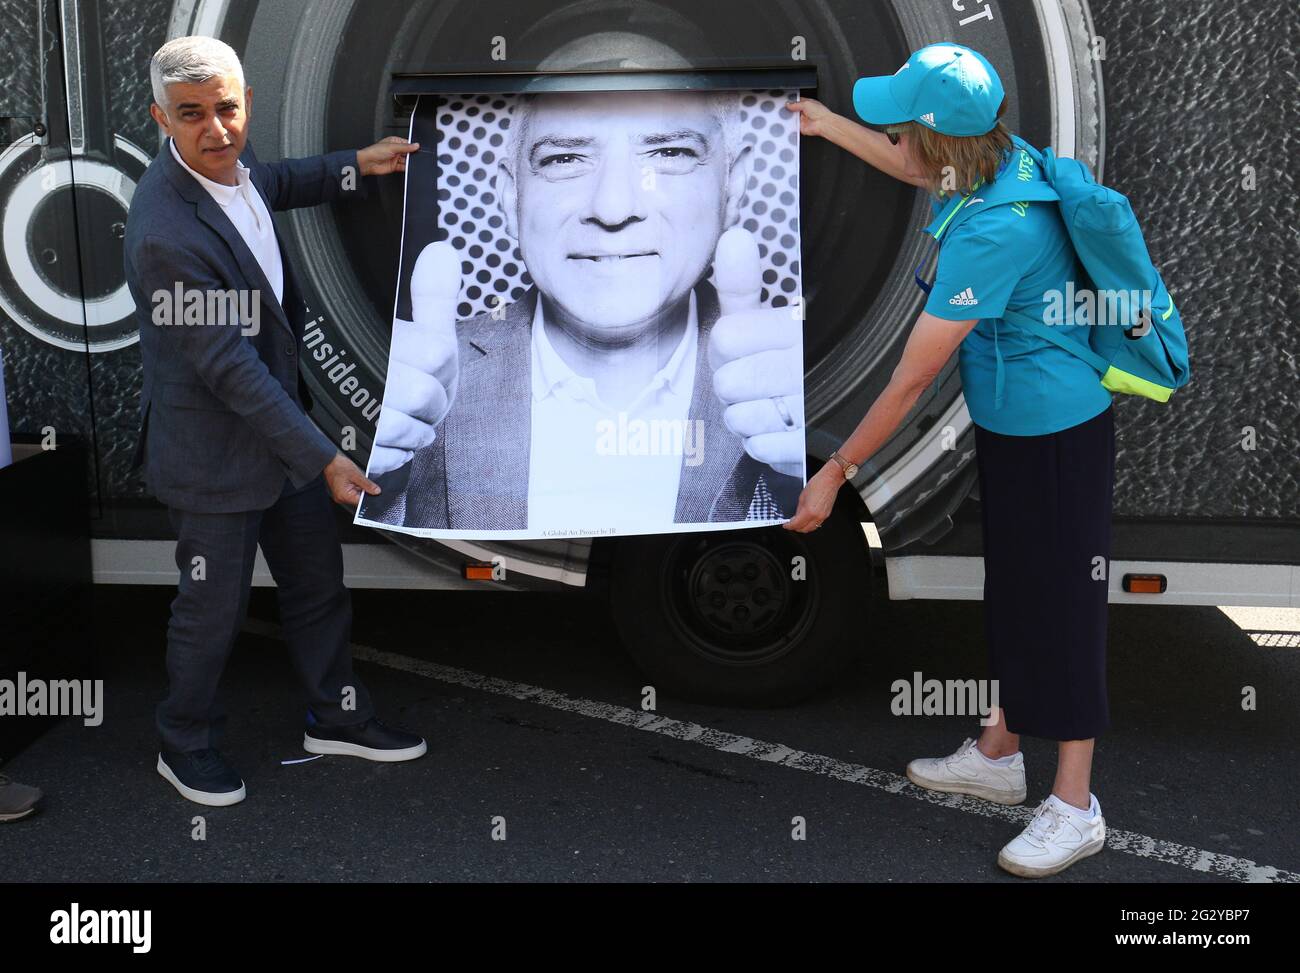 Der Londoner Bürgermeister Sadiq Khan mit einem Selbstporträt auf einer Ausstellung, auf der die Gesichter von mehr als 1,000 Londoner vor der Tower Bridge in London anlässlich der UEFA Euro 2020 eingeklebt wurden. Bilddatum: Sonntag, 13. Juni 2021. Stockfoto